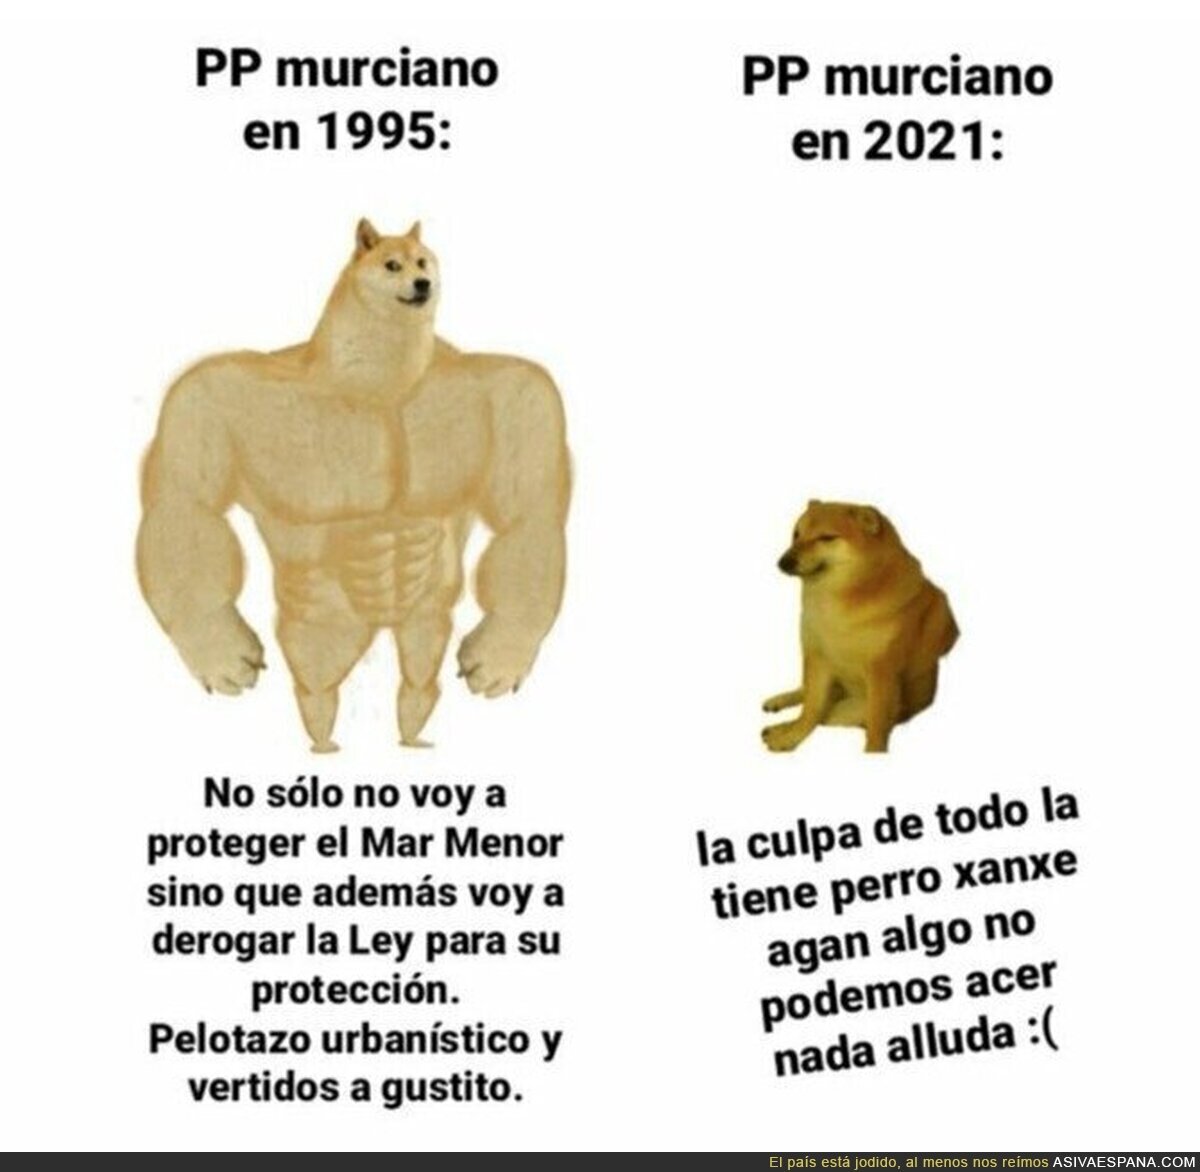 El PP en Murcia siempre tiene un culpable